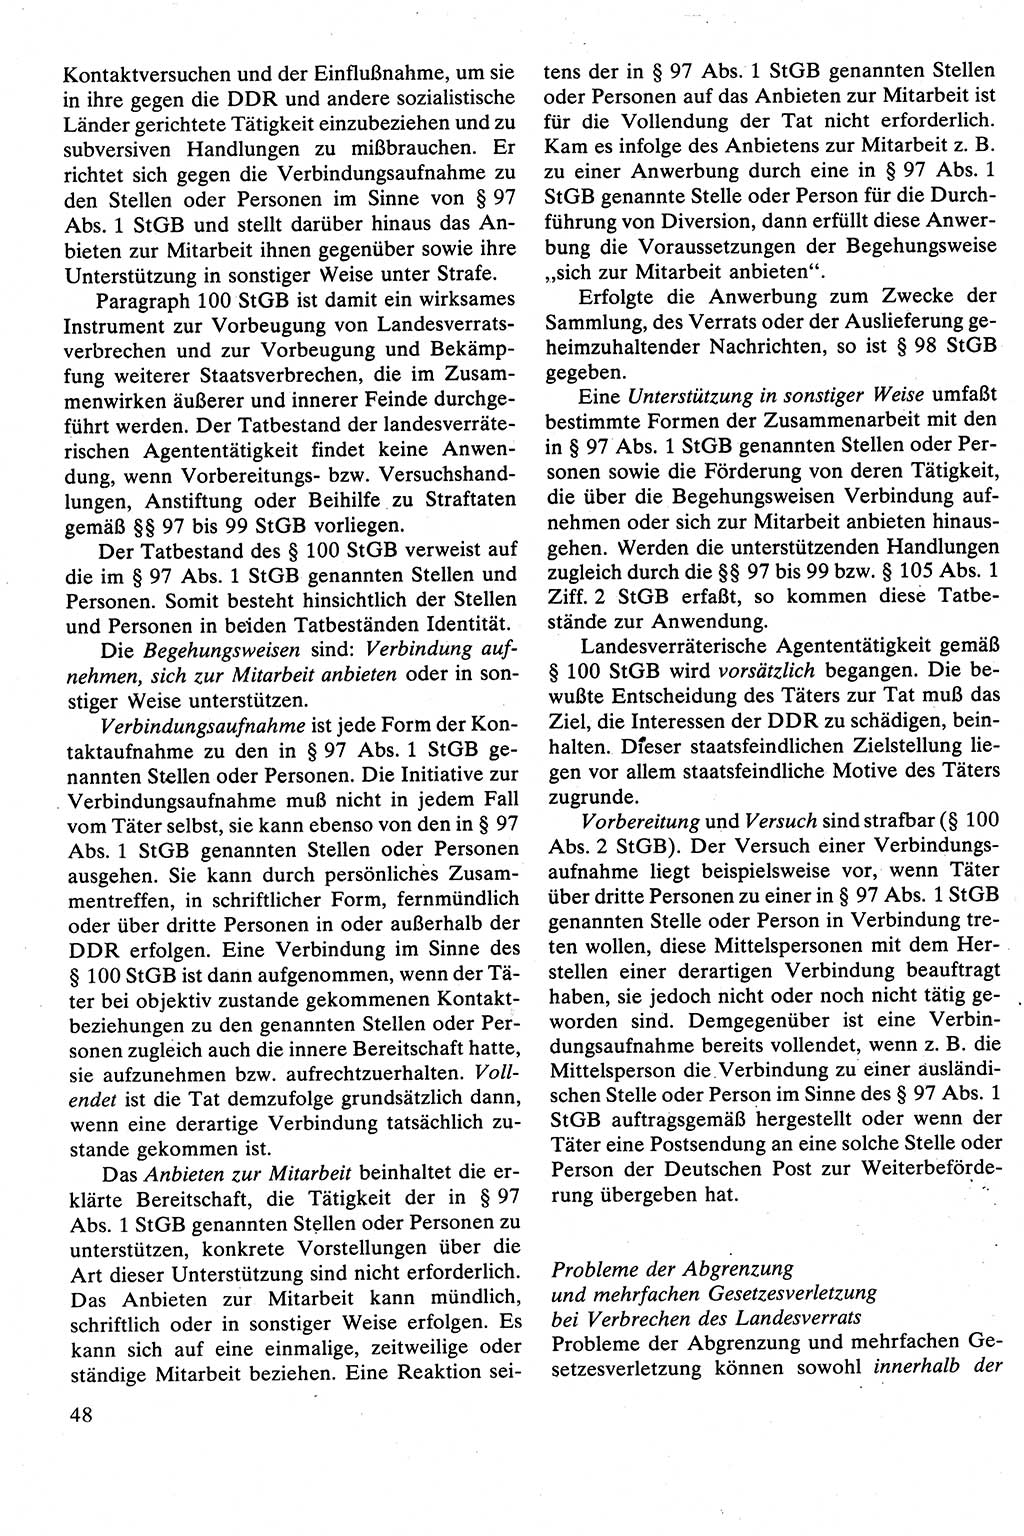 Strafrecht [Deutsche Demokratische Republik (DDR)], Besonderer Teil, Lehrbuch 1981, Seite 48 (Strafr. DDR BT Lb. 1981, S. 48)